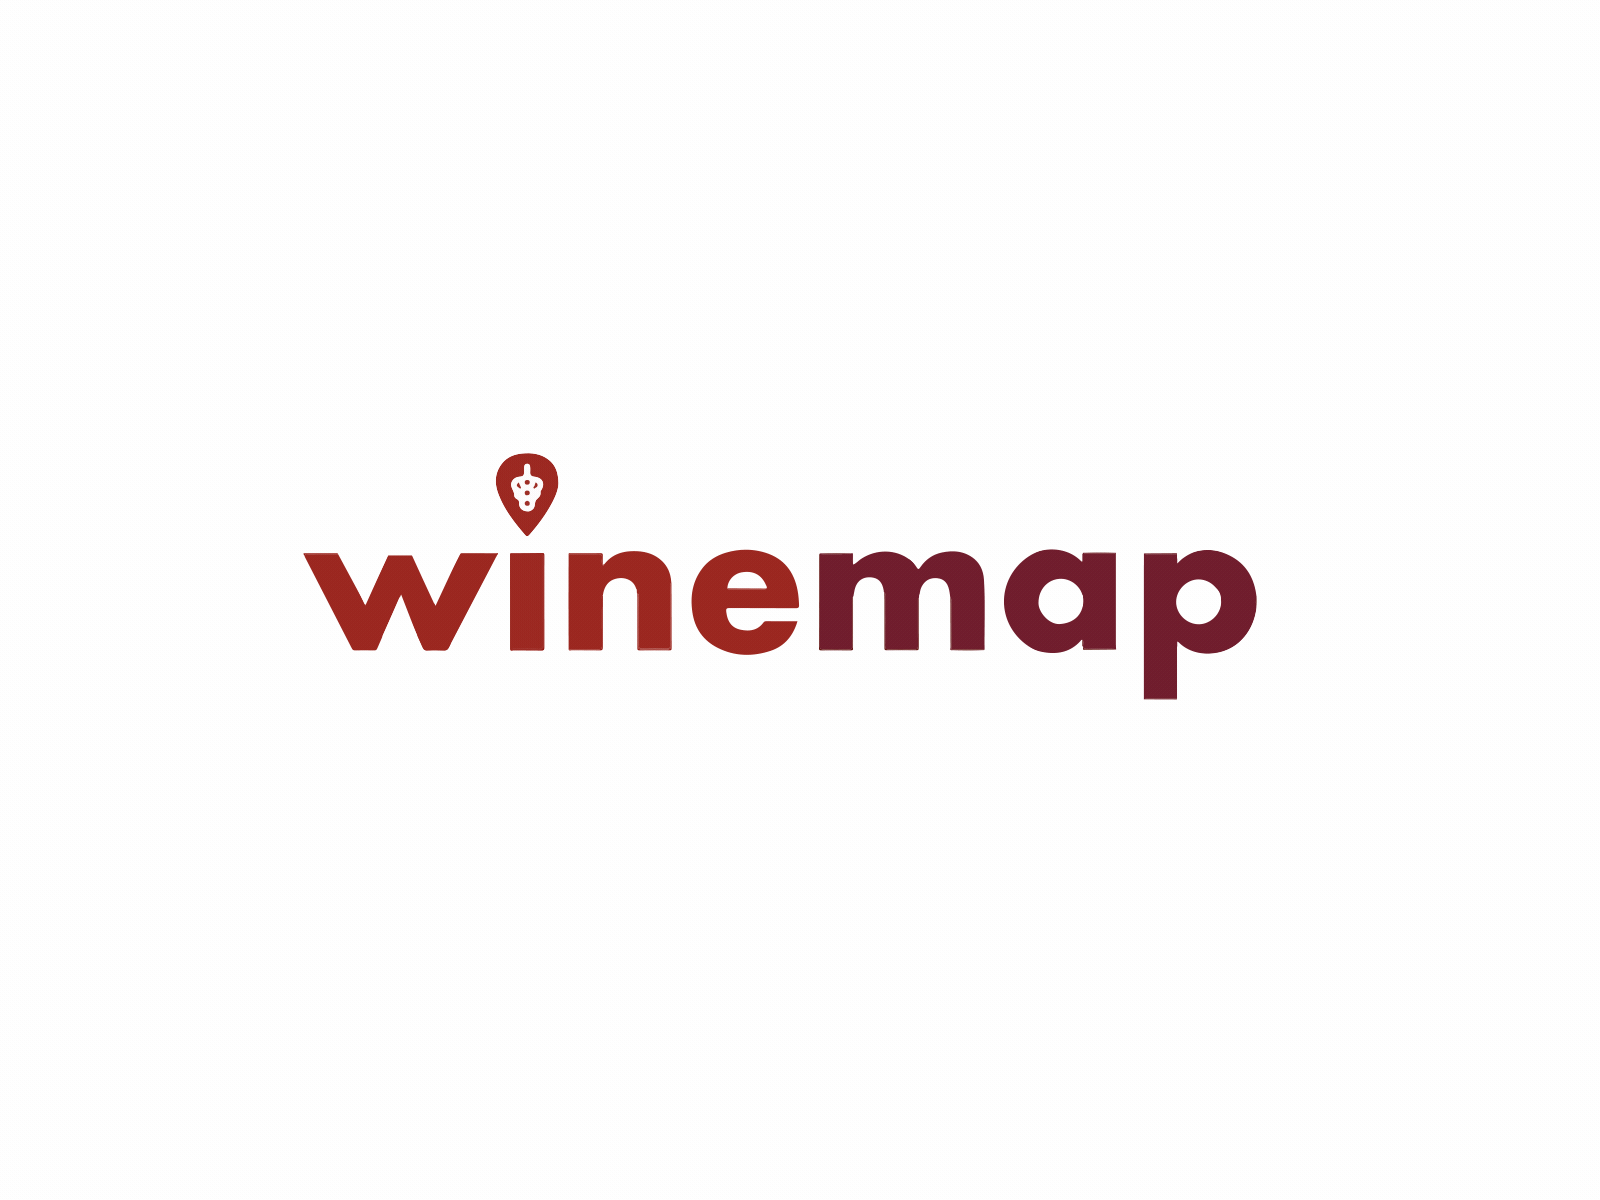 Winemap logo animation animated logo animation branding branding animation drop grape logo logo animation lottie motion graphics motion logo wine